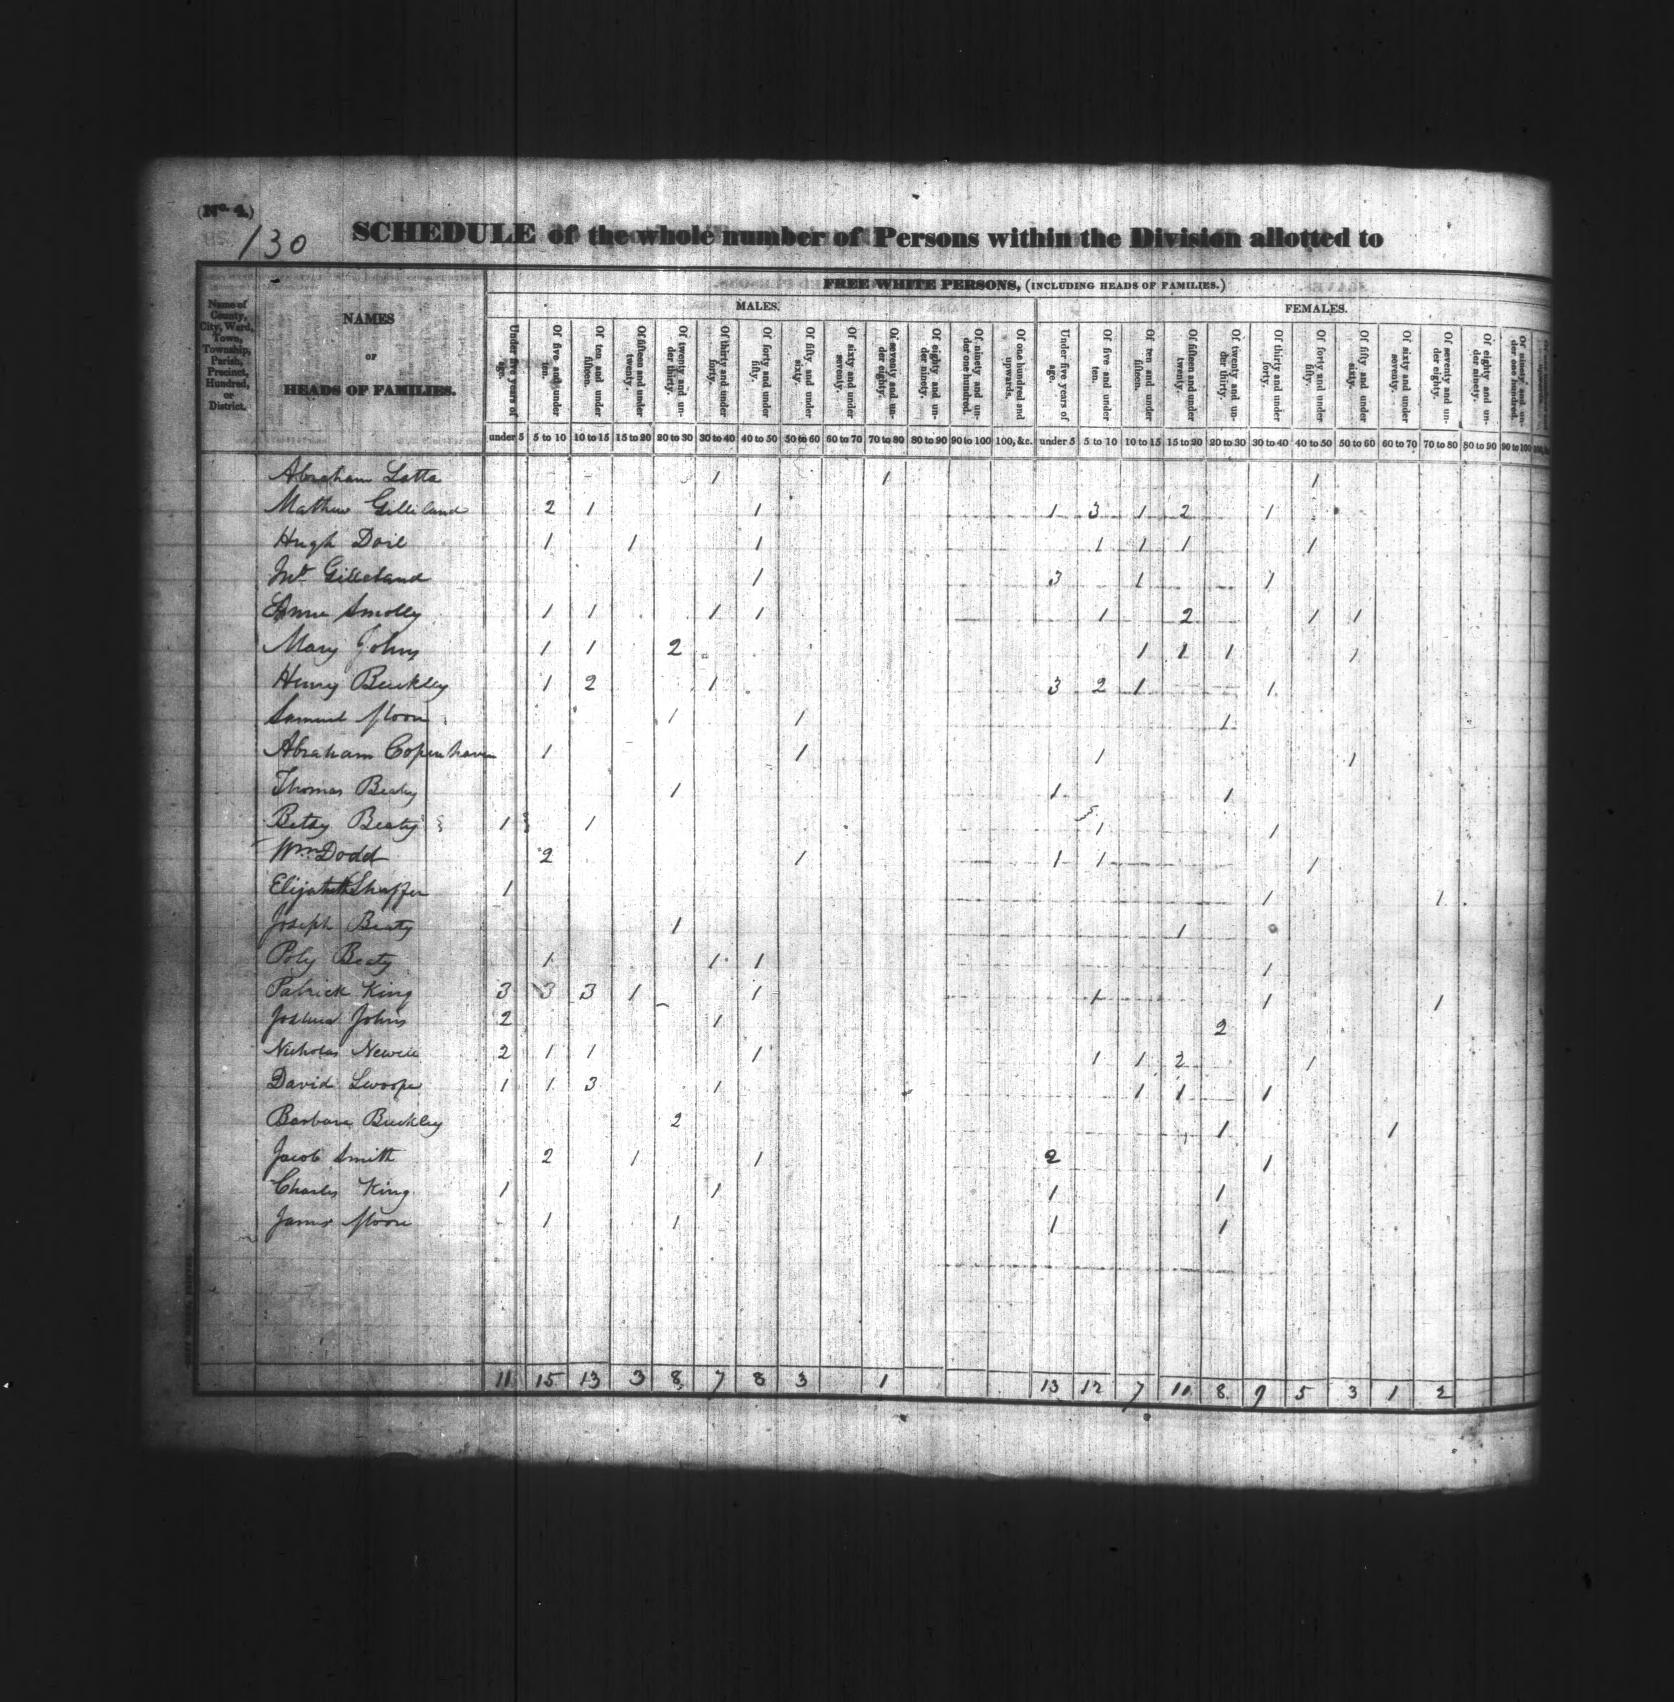 1830 Census - Abraham Latta